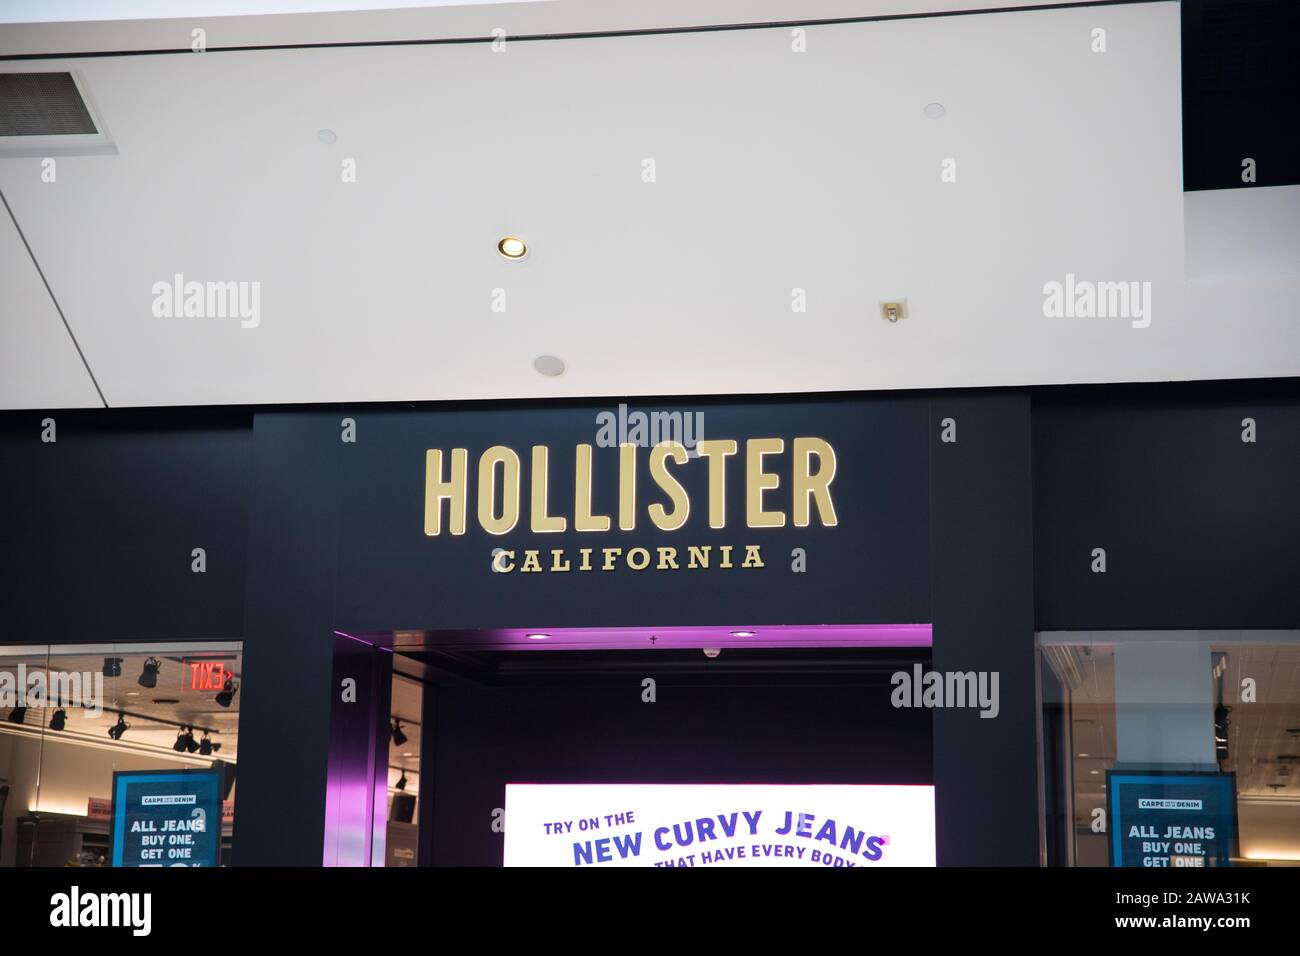 Hollister California Banque d'image et 